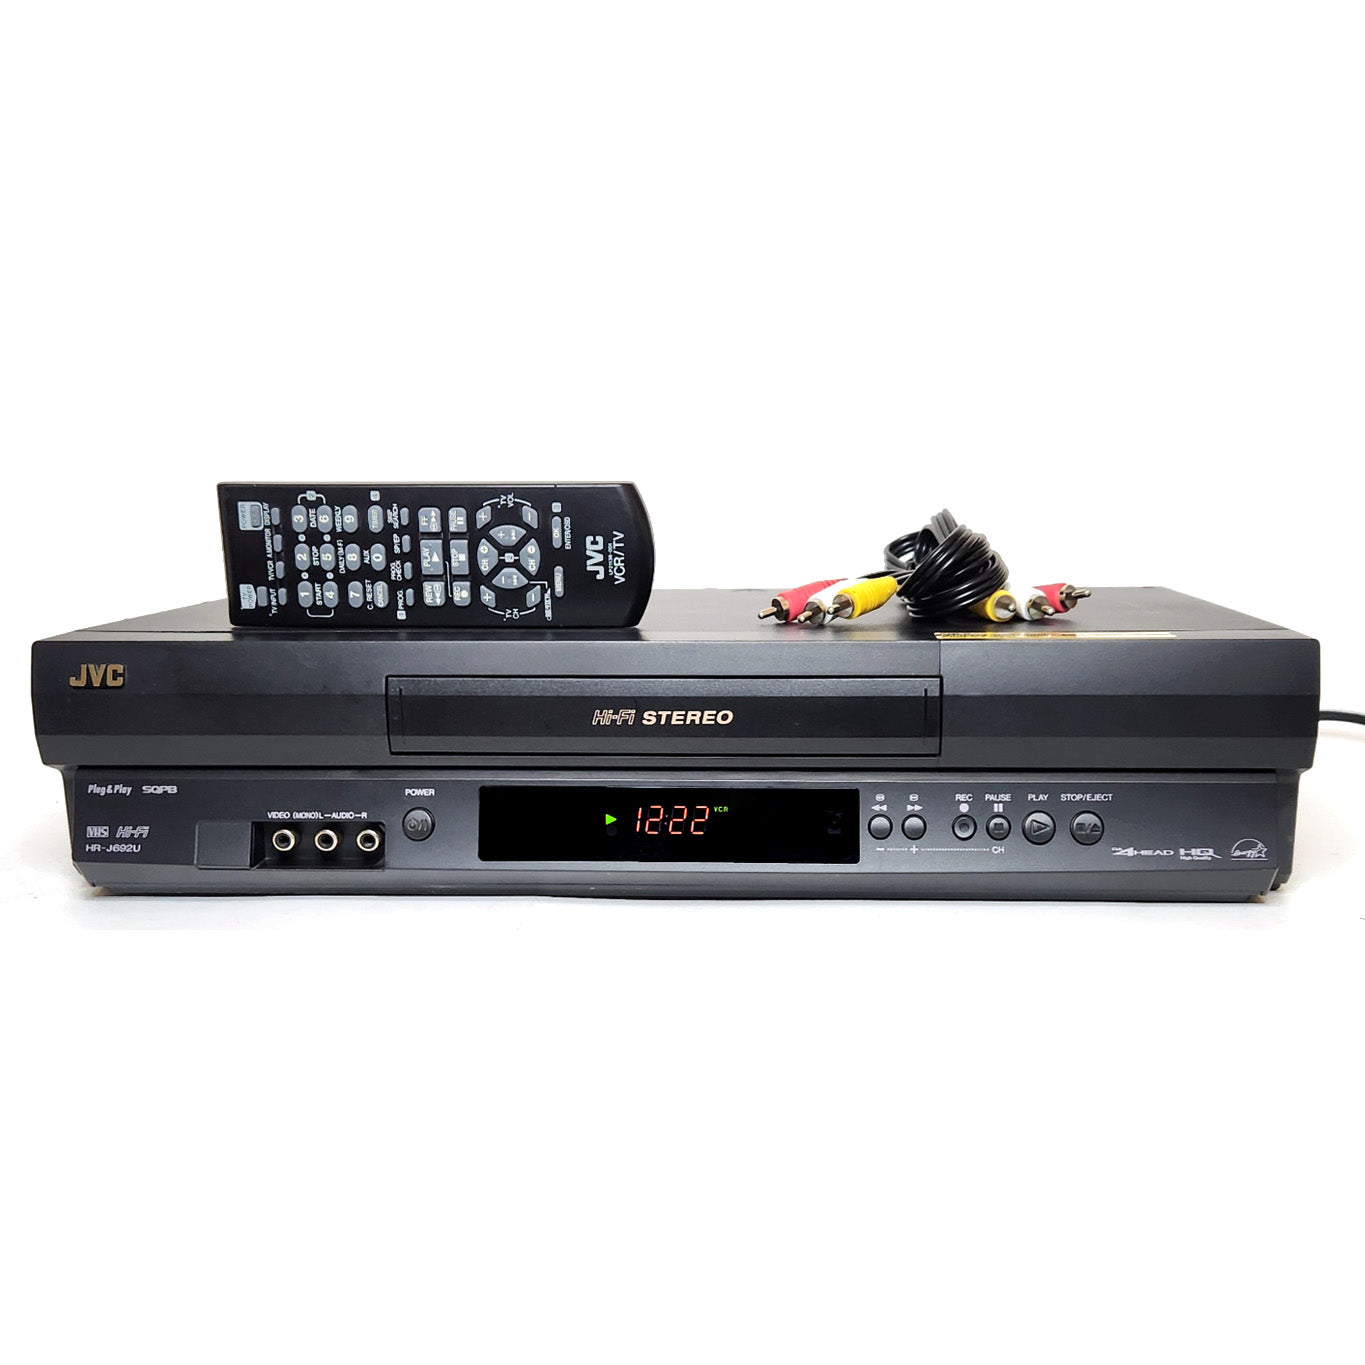 JVC HR-J692U VCR, 4-Head Hi-Fi Stereo